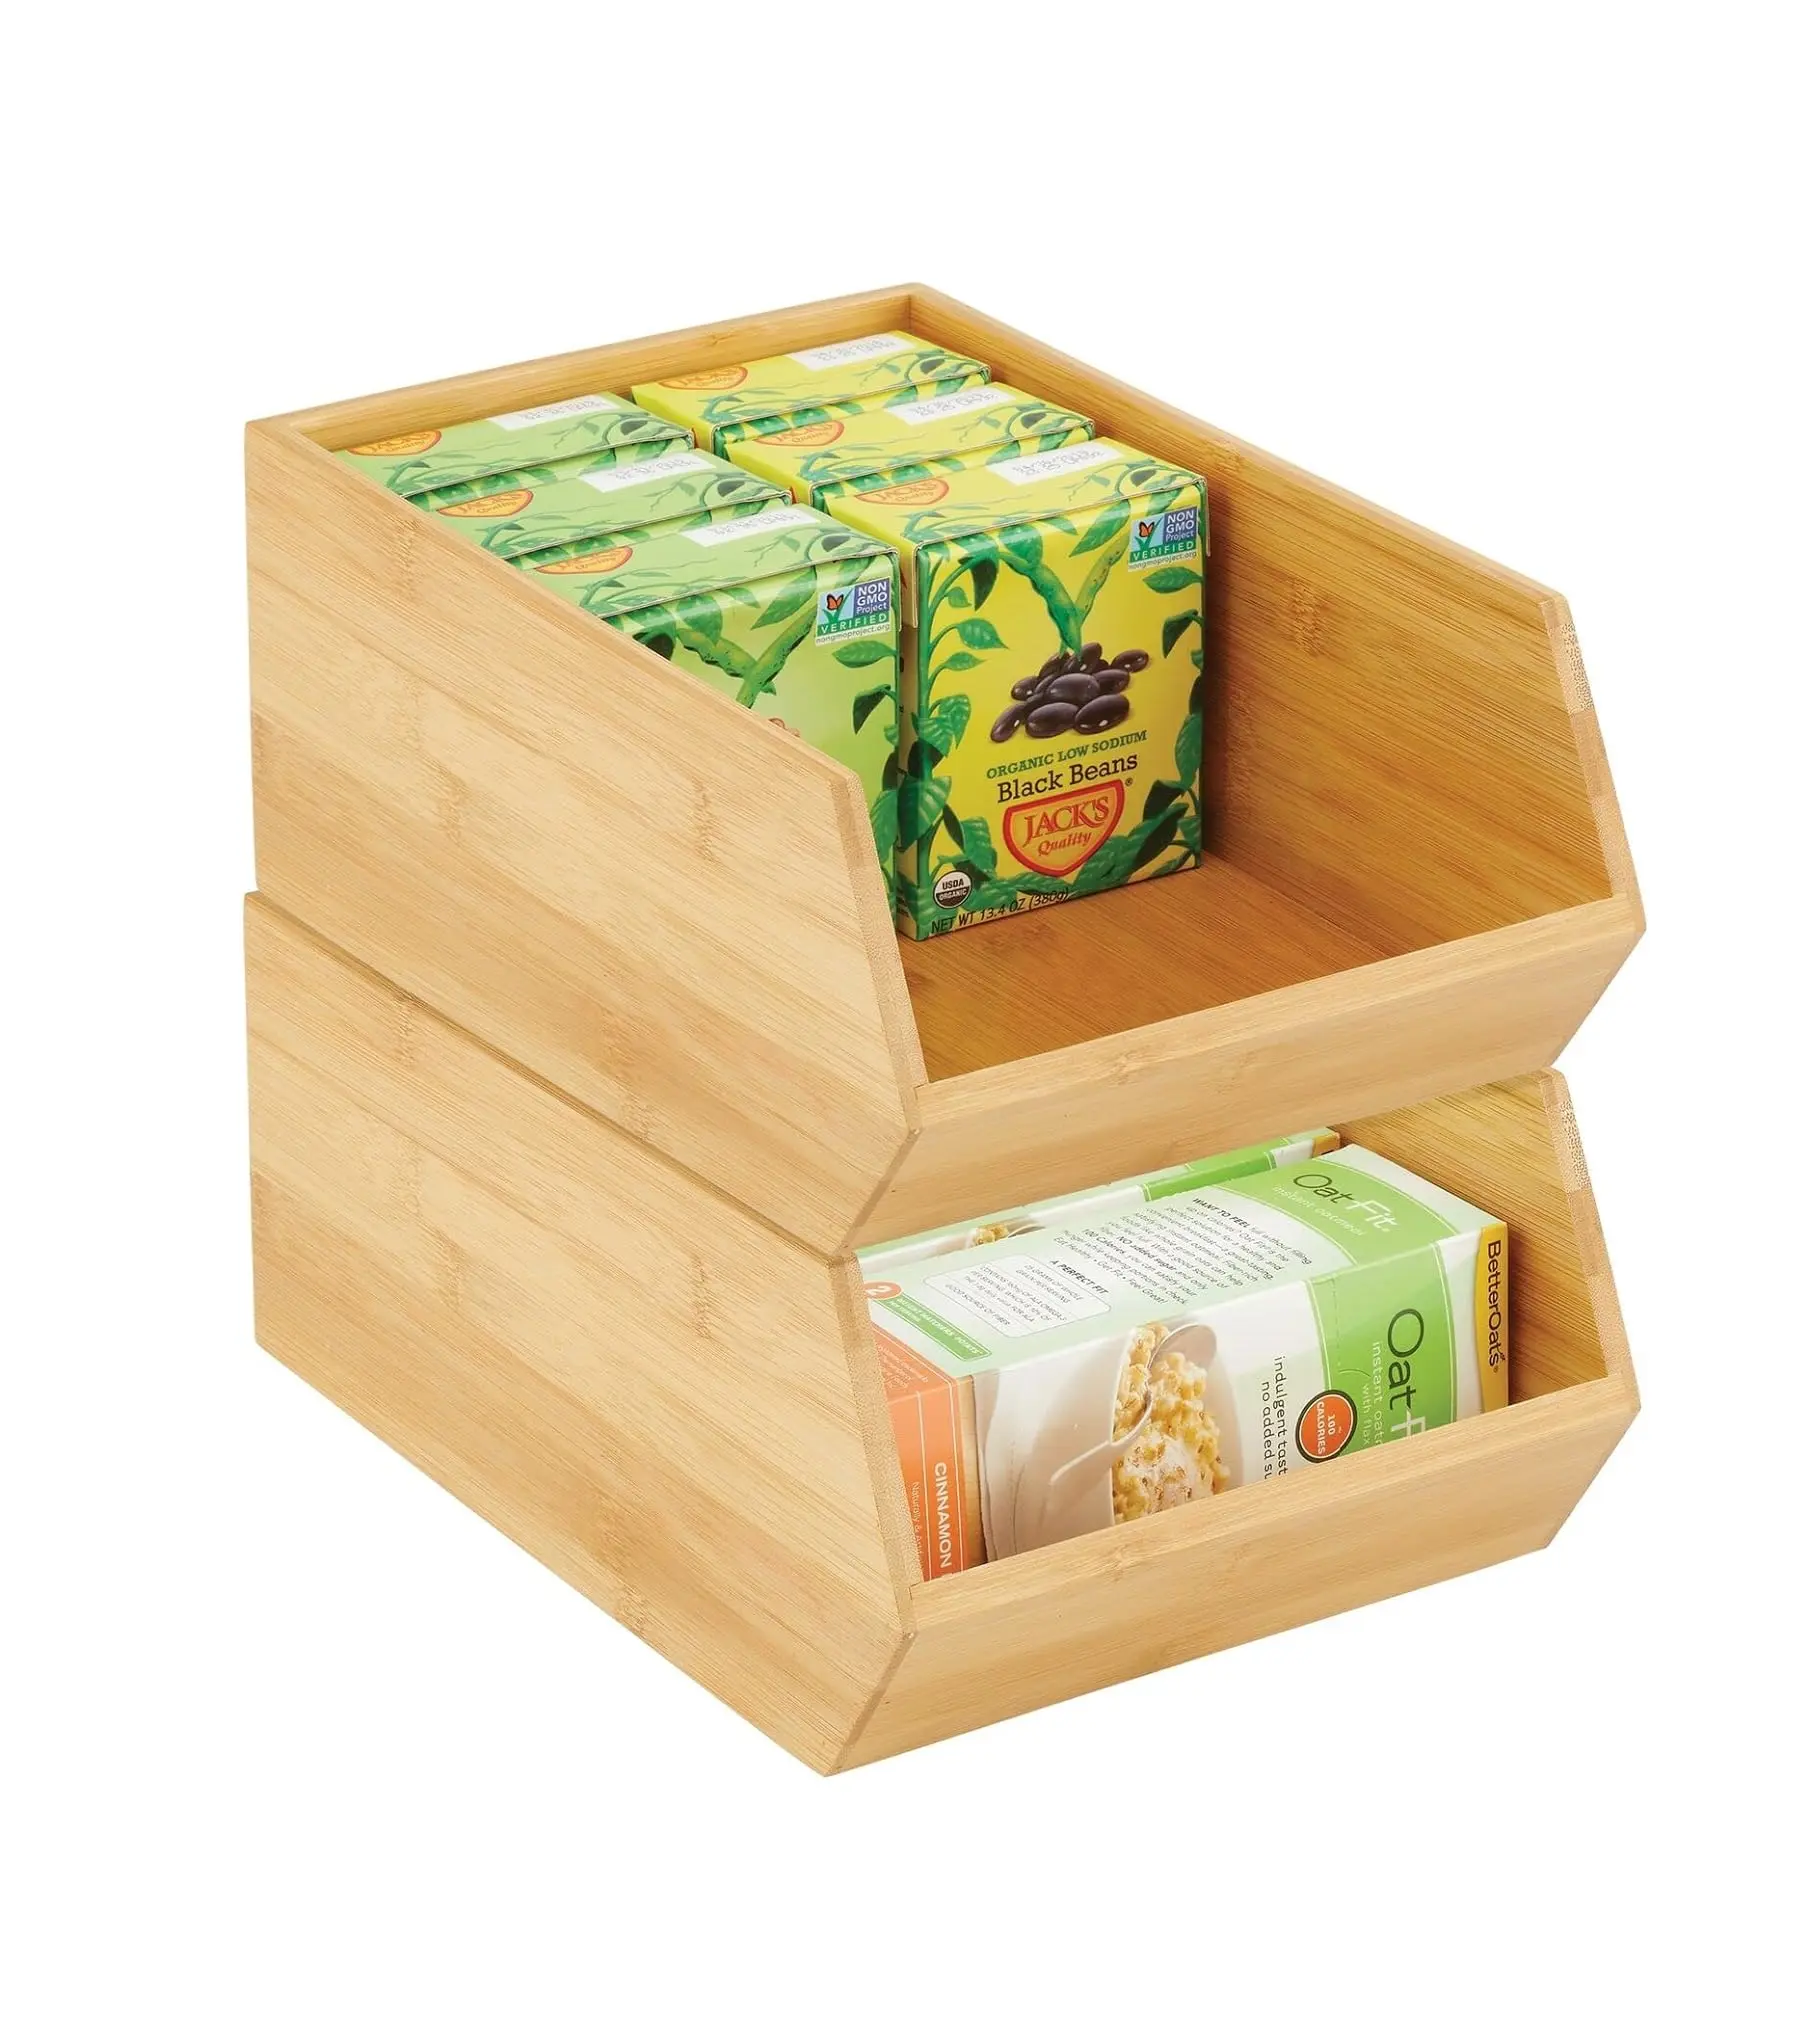 Panier de rangement empilable en bambou pour rangement des aliments-Large ouverture à l'avant pour armoires de cuisine garde-manger bureaux placards peut contenir